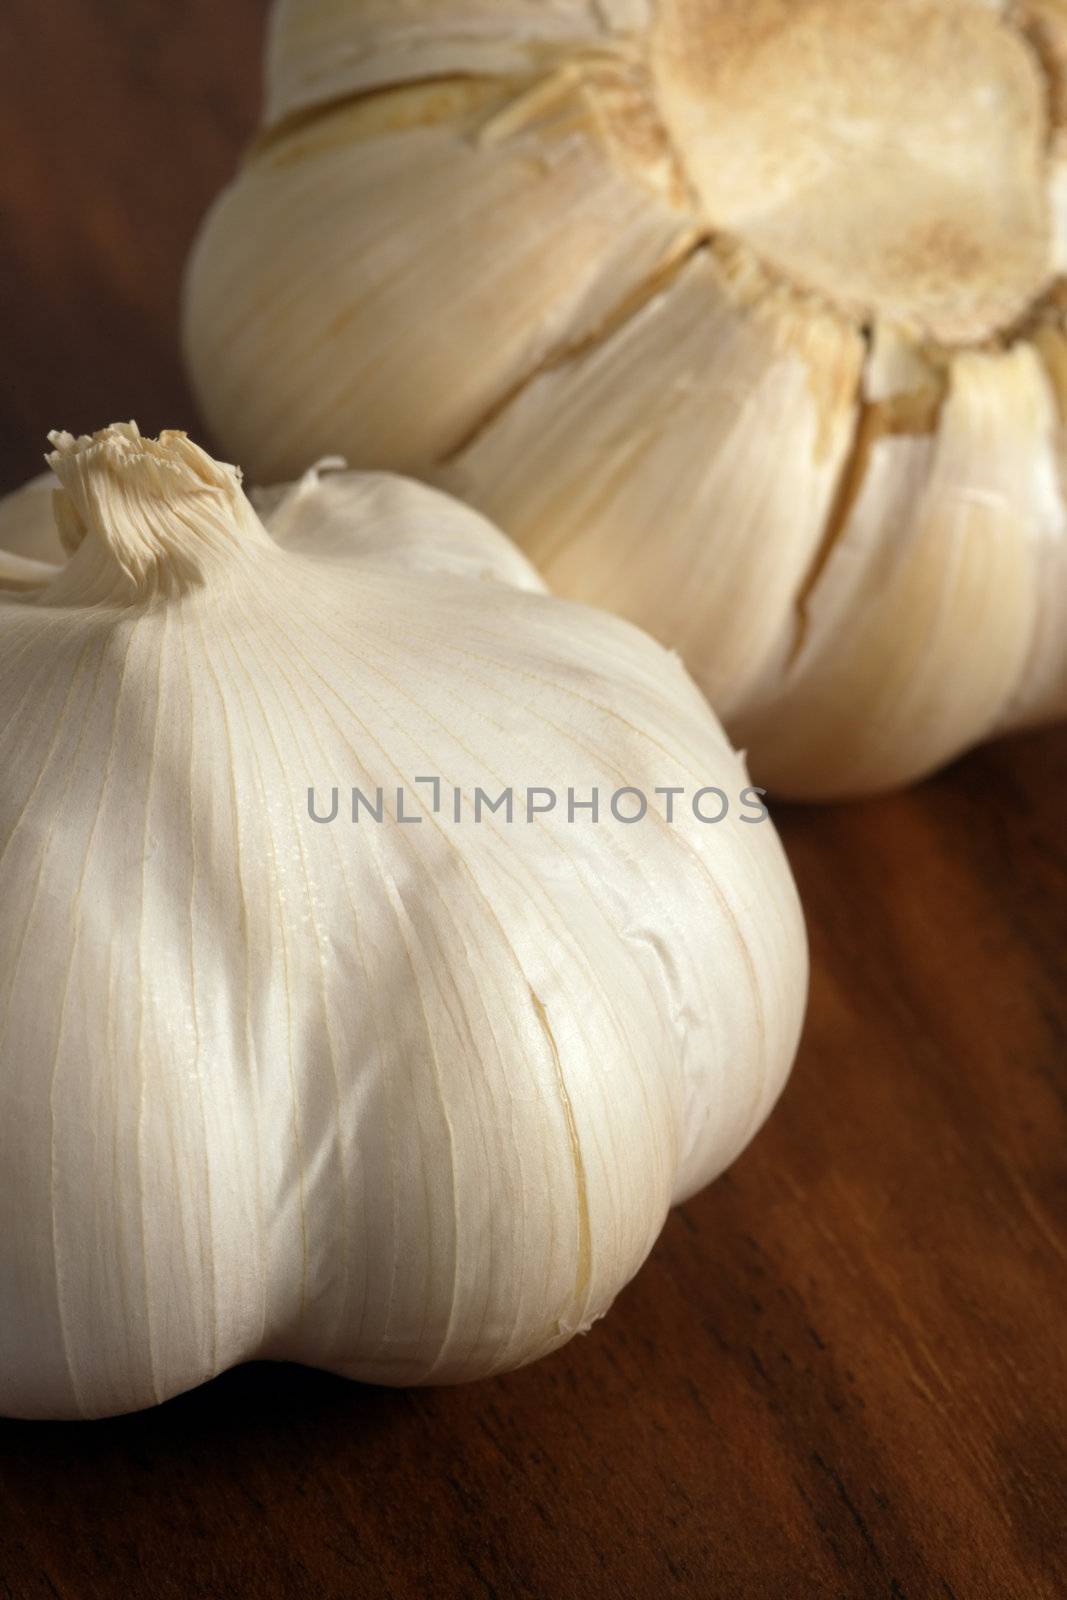 Cloves of garlic on a wood cutting board
